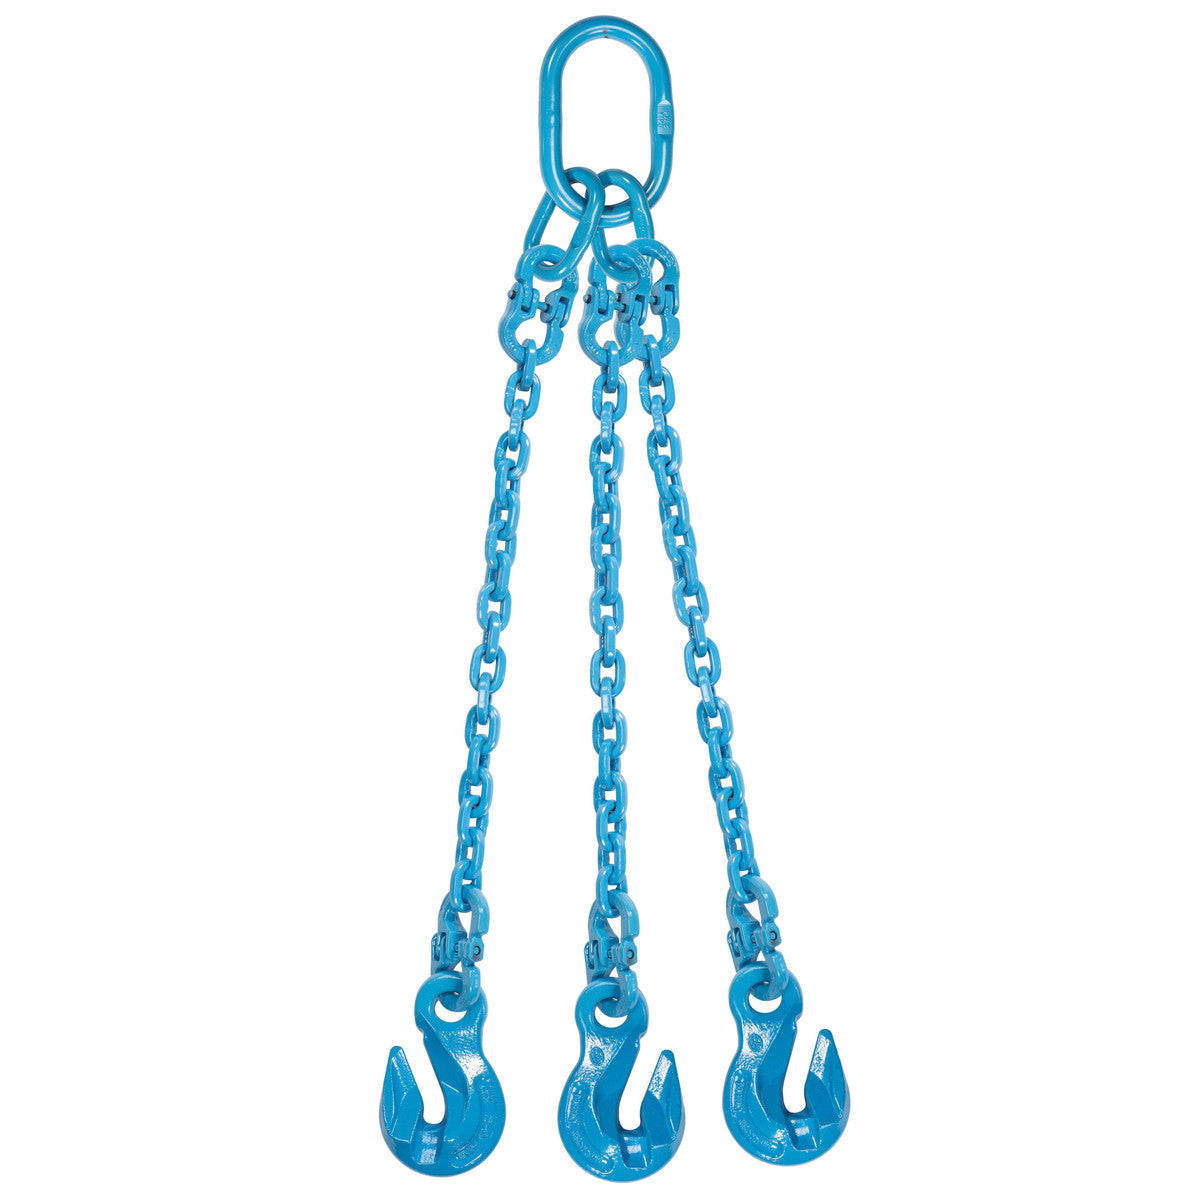 9/32" x 18' - Pewag 3 Leg Chain Sling w/ Grab Hooks - Grade 120